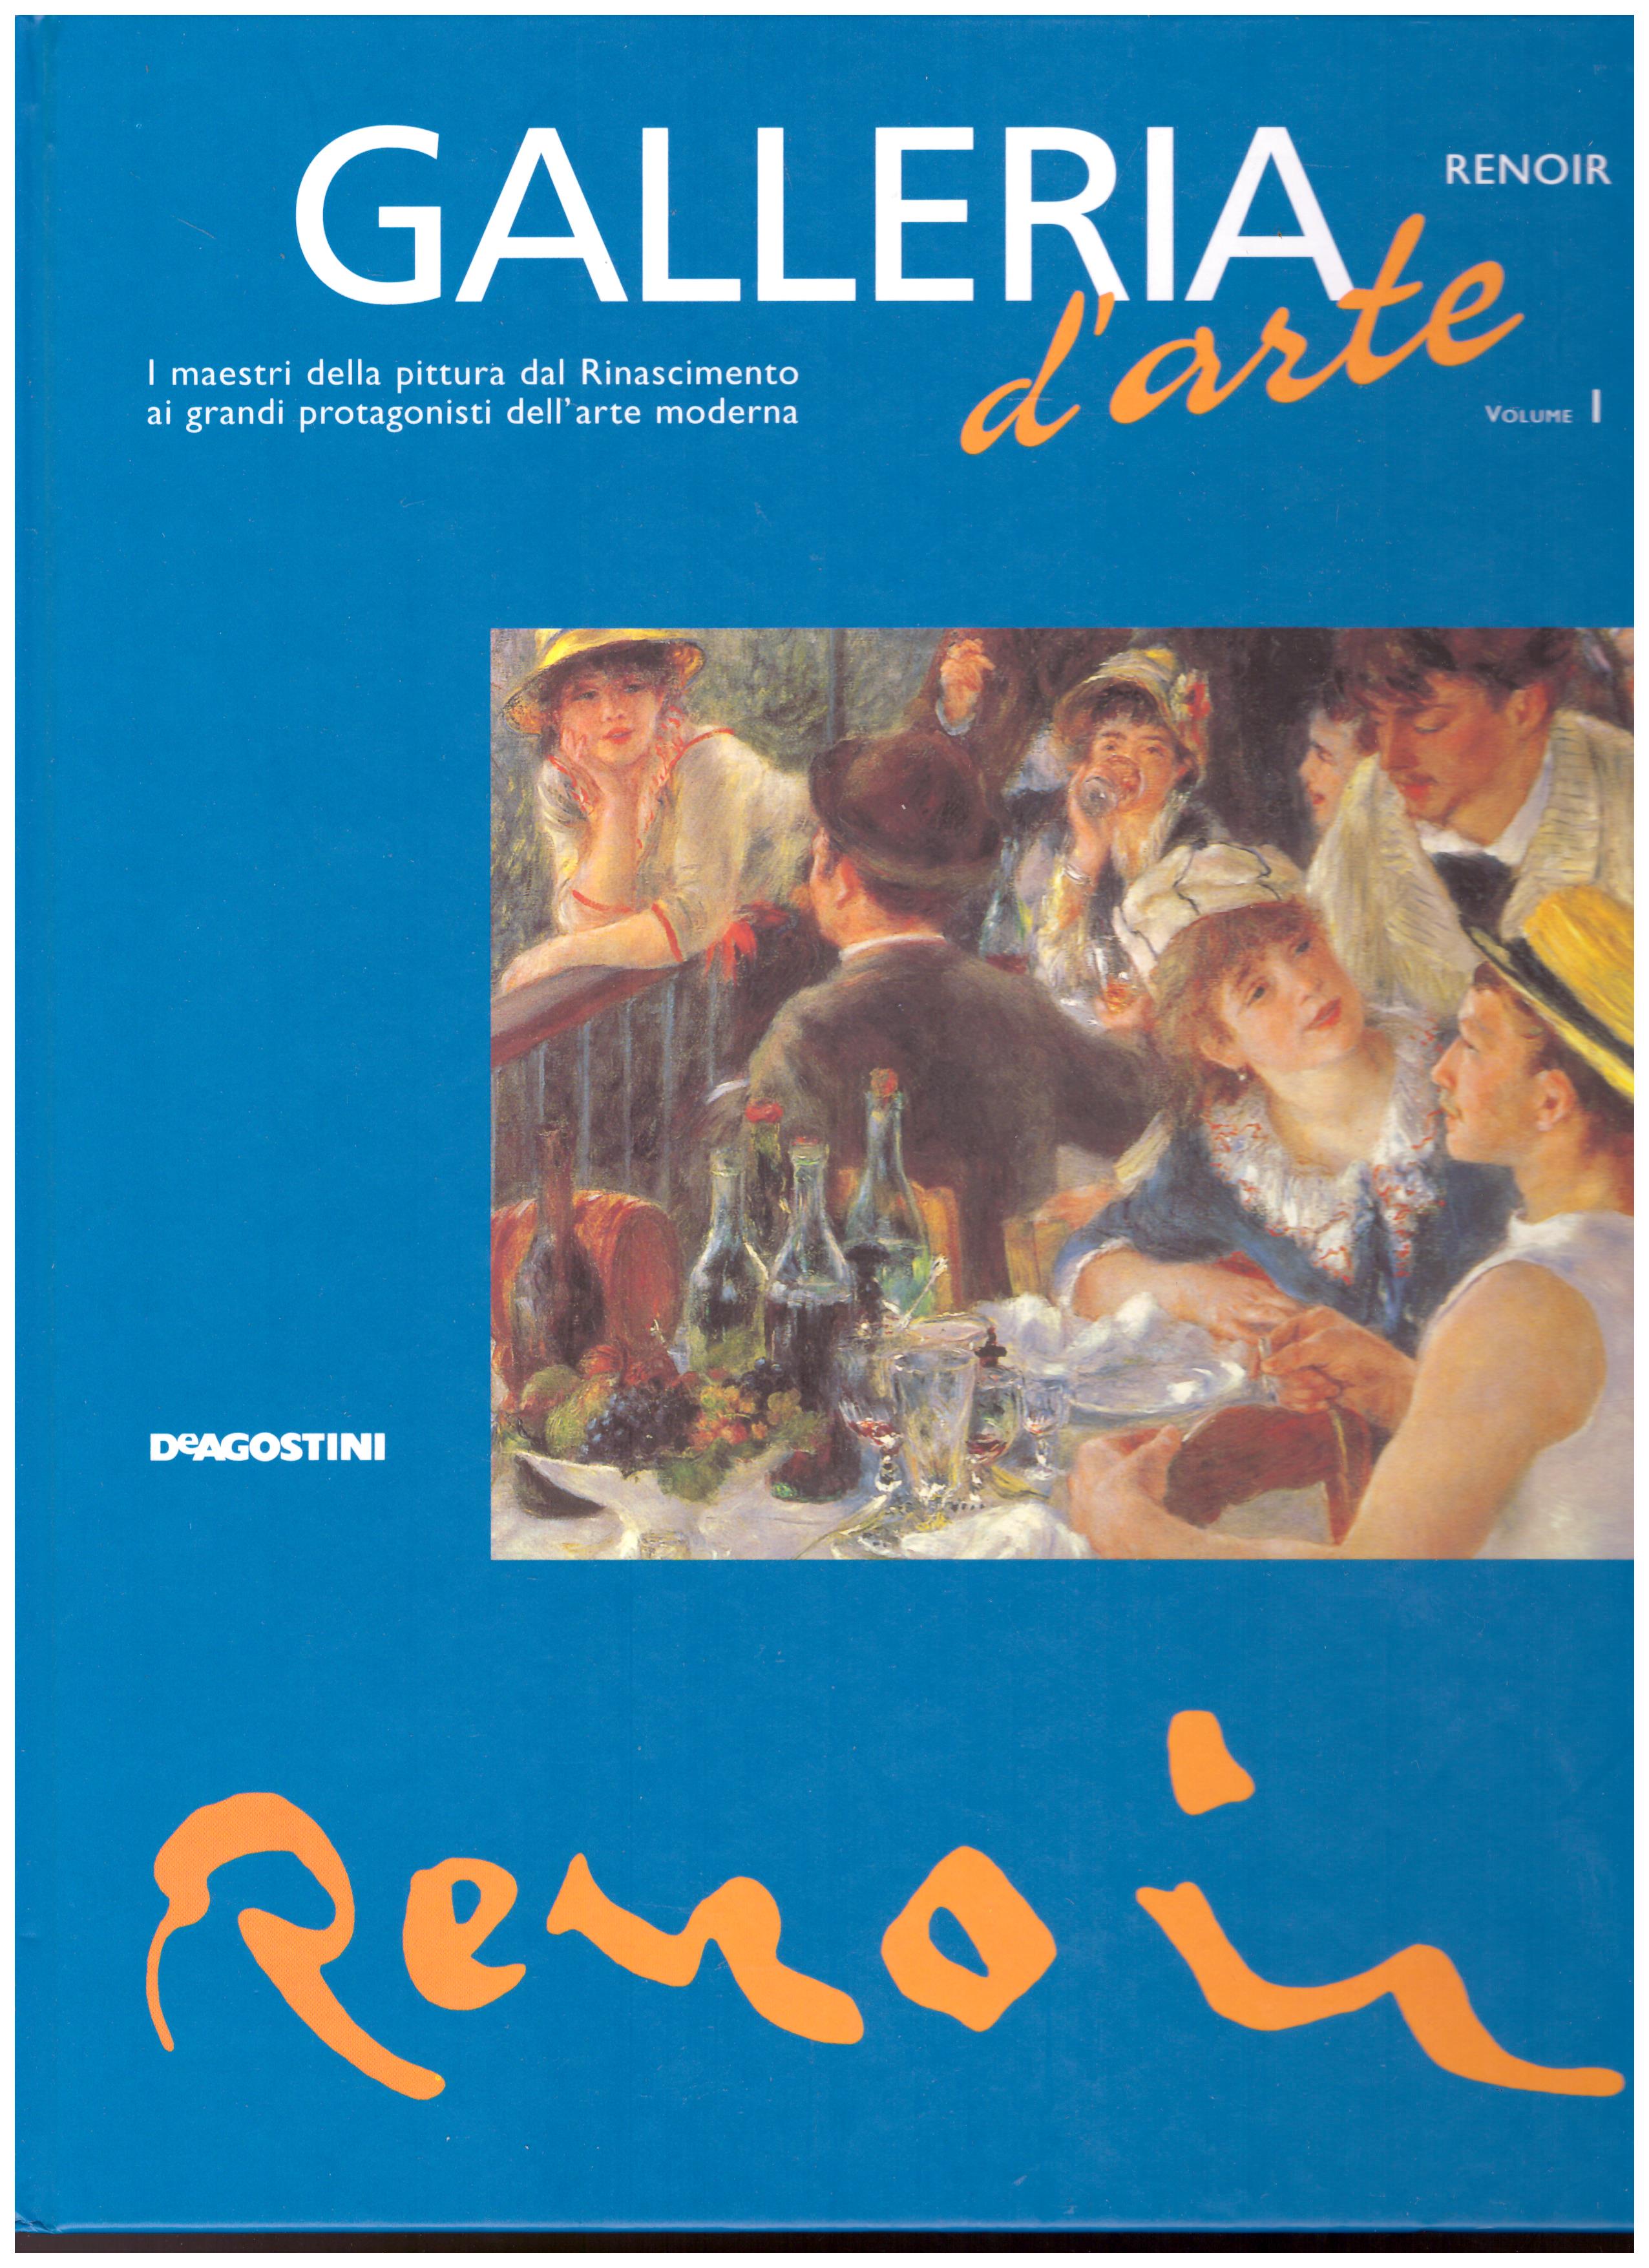 Titolo: Galleria d'arte, Renoir Autore: AA.VV.  Editore: DeAgostini, 2001